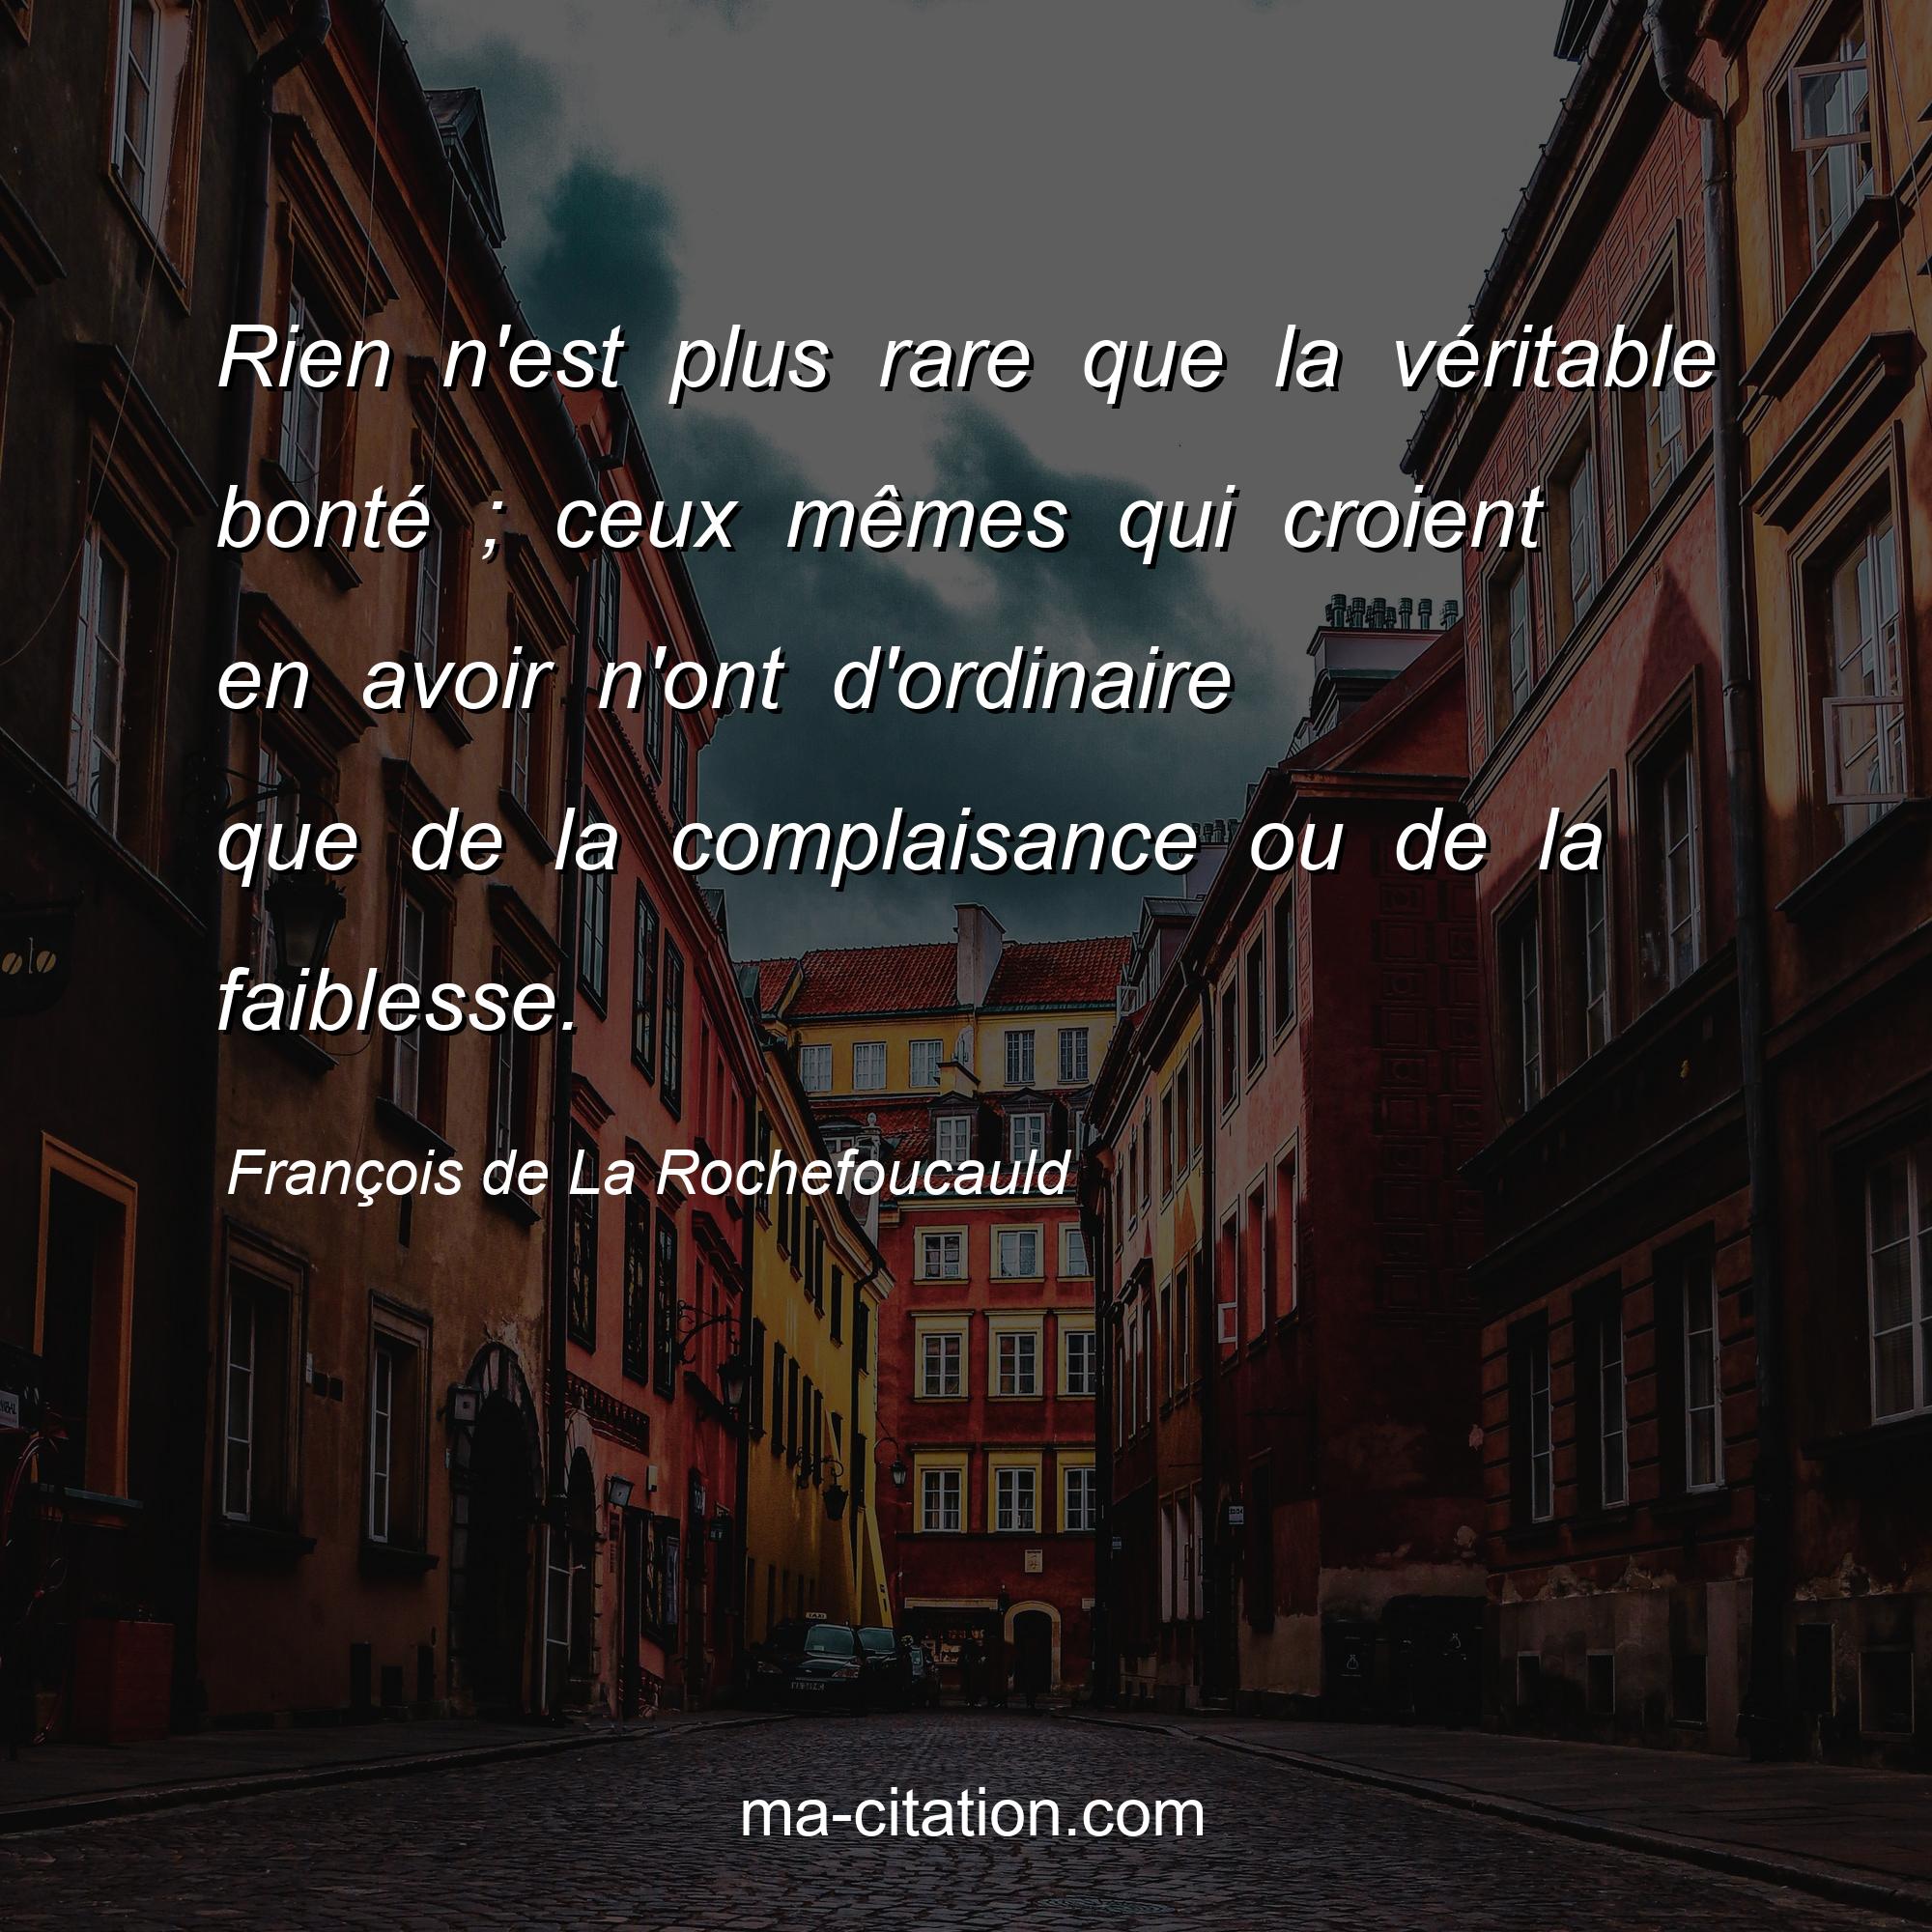 François de La Rochefoucauld : Rien n'est plus rare que la véritable bonté ; ceux mêmes qui croient en avoir n'ont d'ordinaire que de la complaisance ou de la faiblesse.